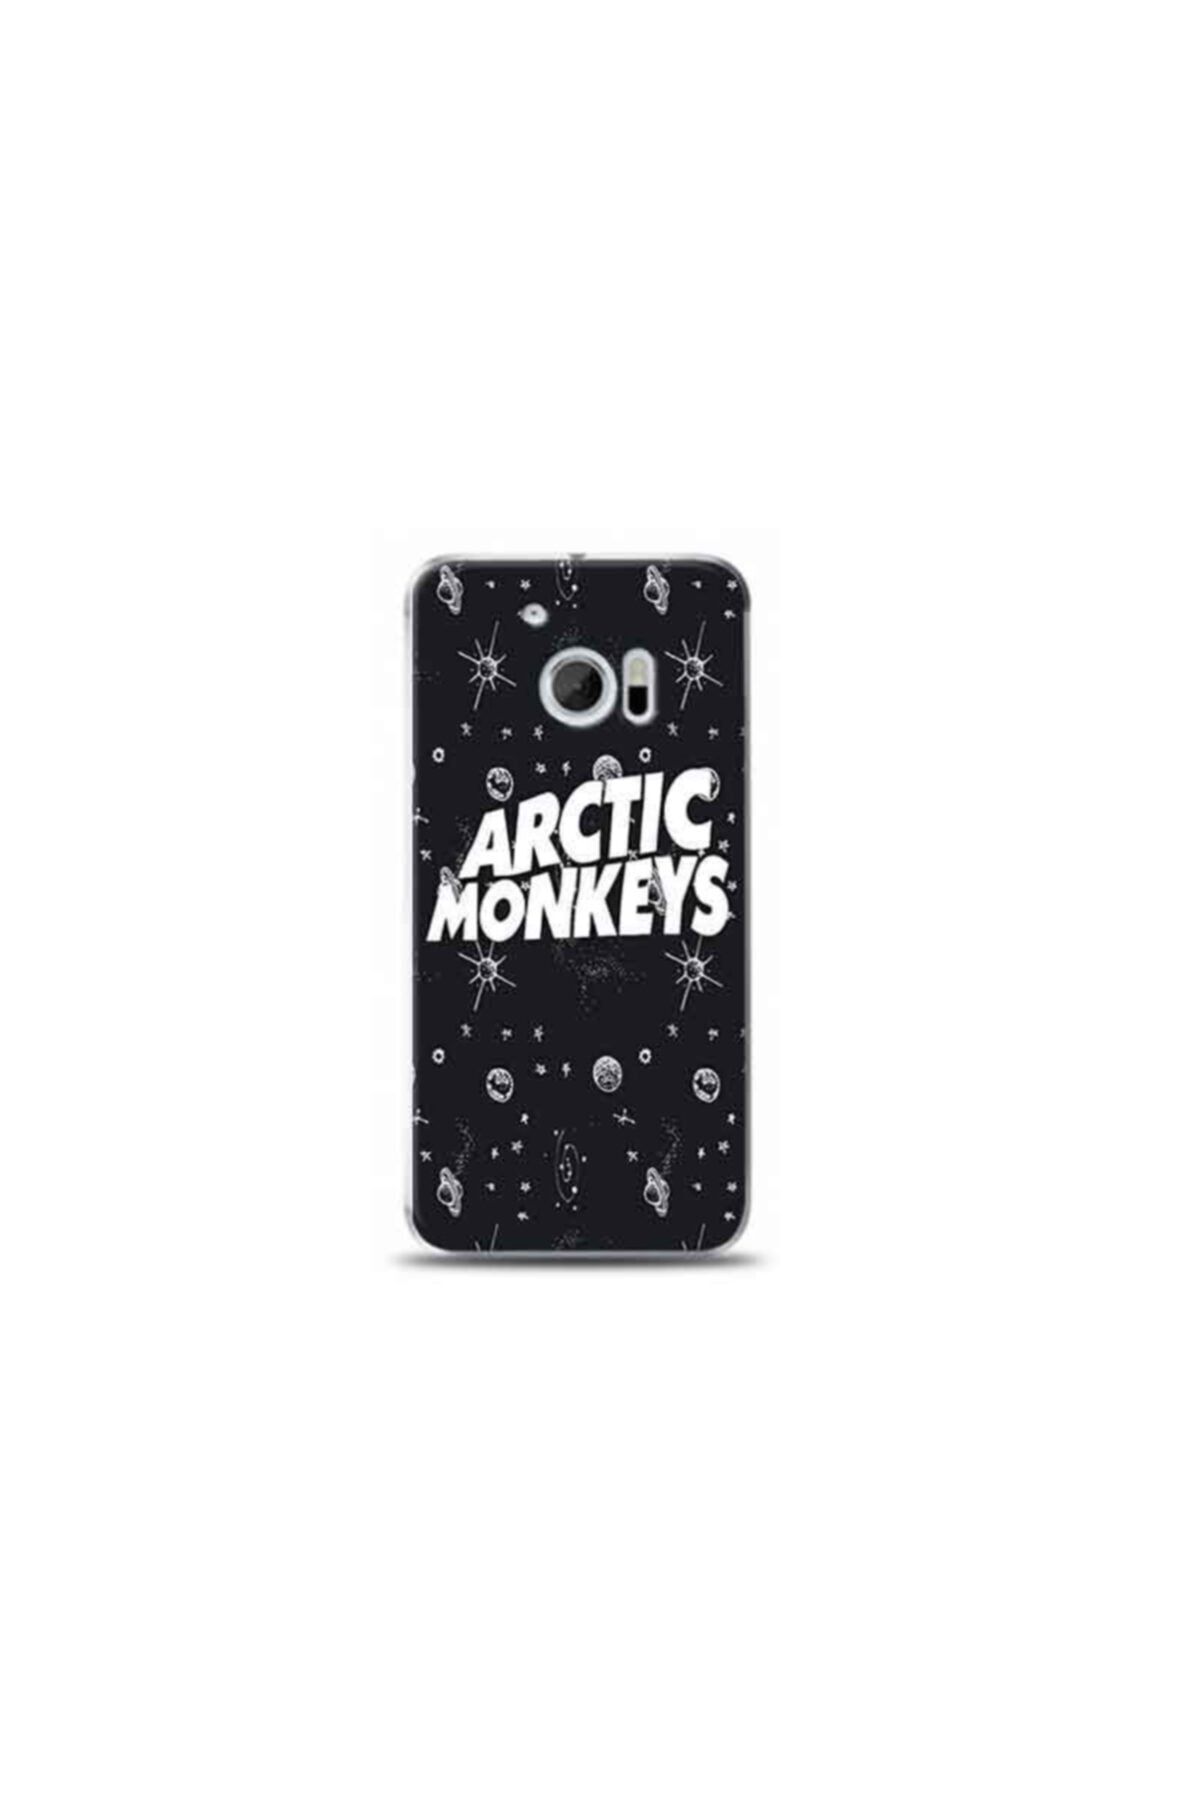 Kılıf Madeni Htc M10 Arctic Monkeys Tasarımlı Telefon Kılıfı Y-arcticmonkeyskf0008